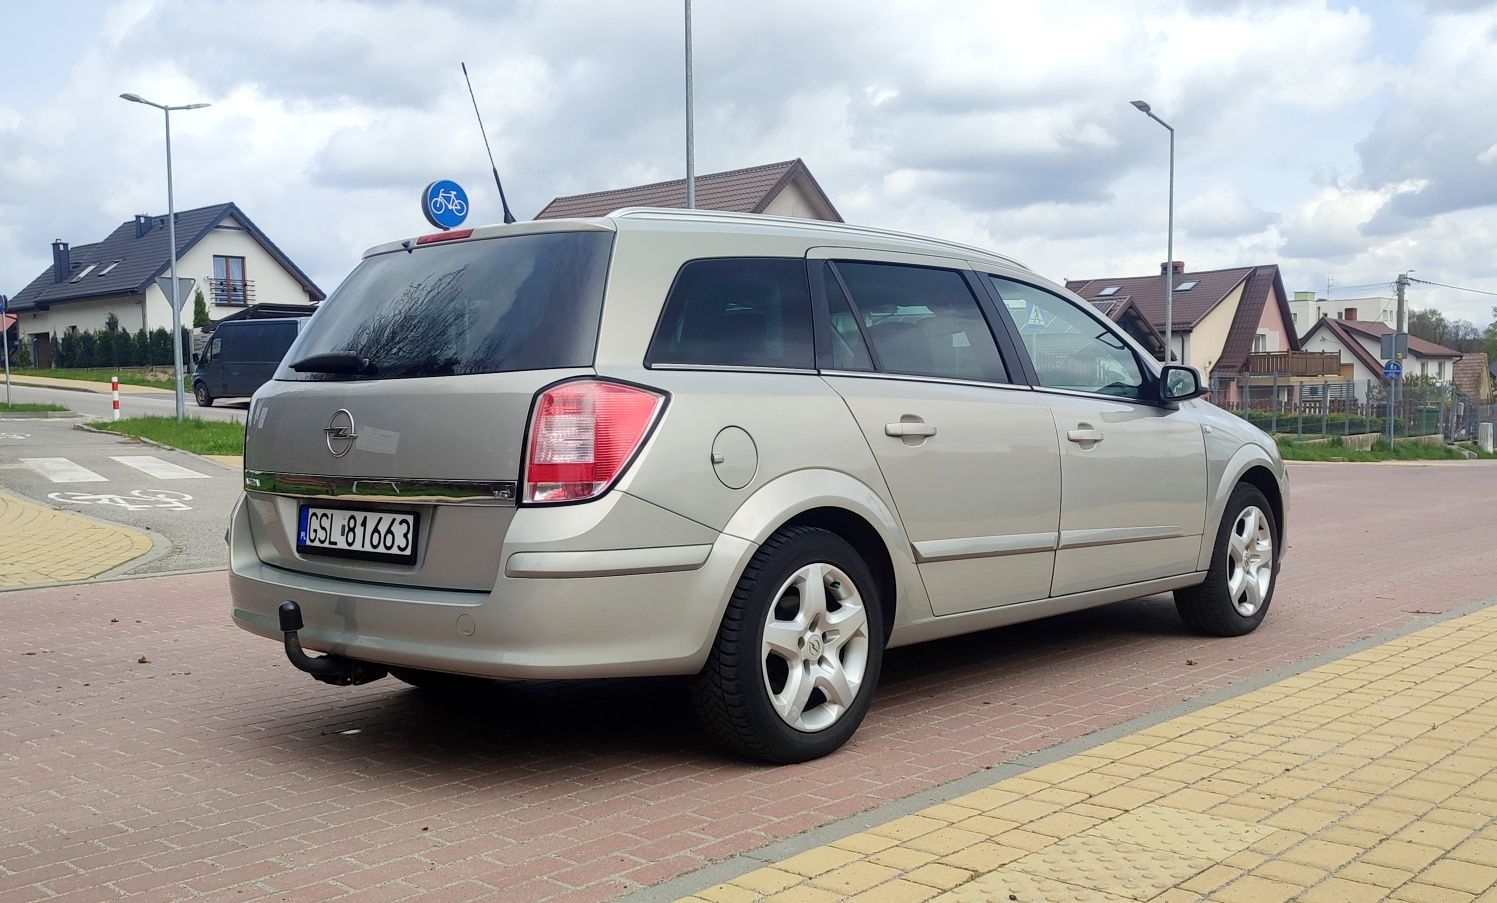 Opel Astra h 2007 r 1.6 benzyna 115 km Automat tylko 183 tys. Km